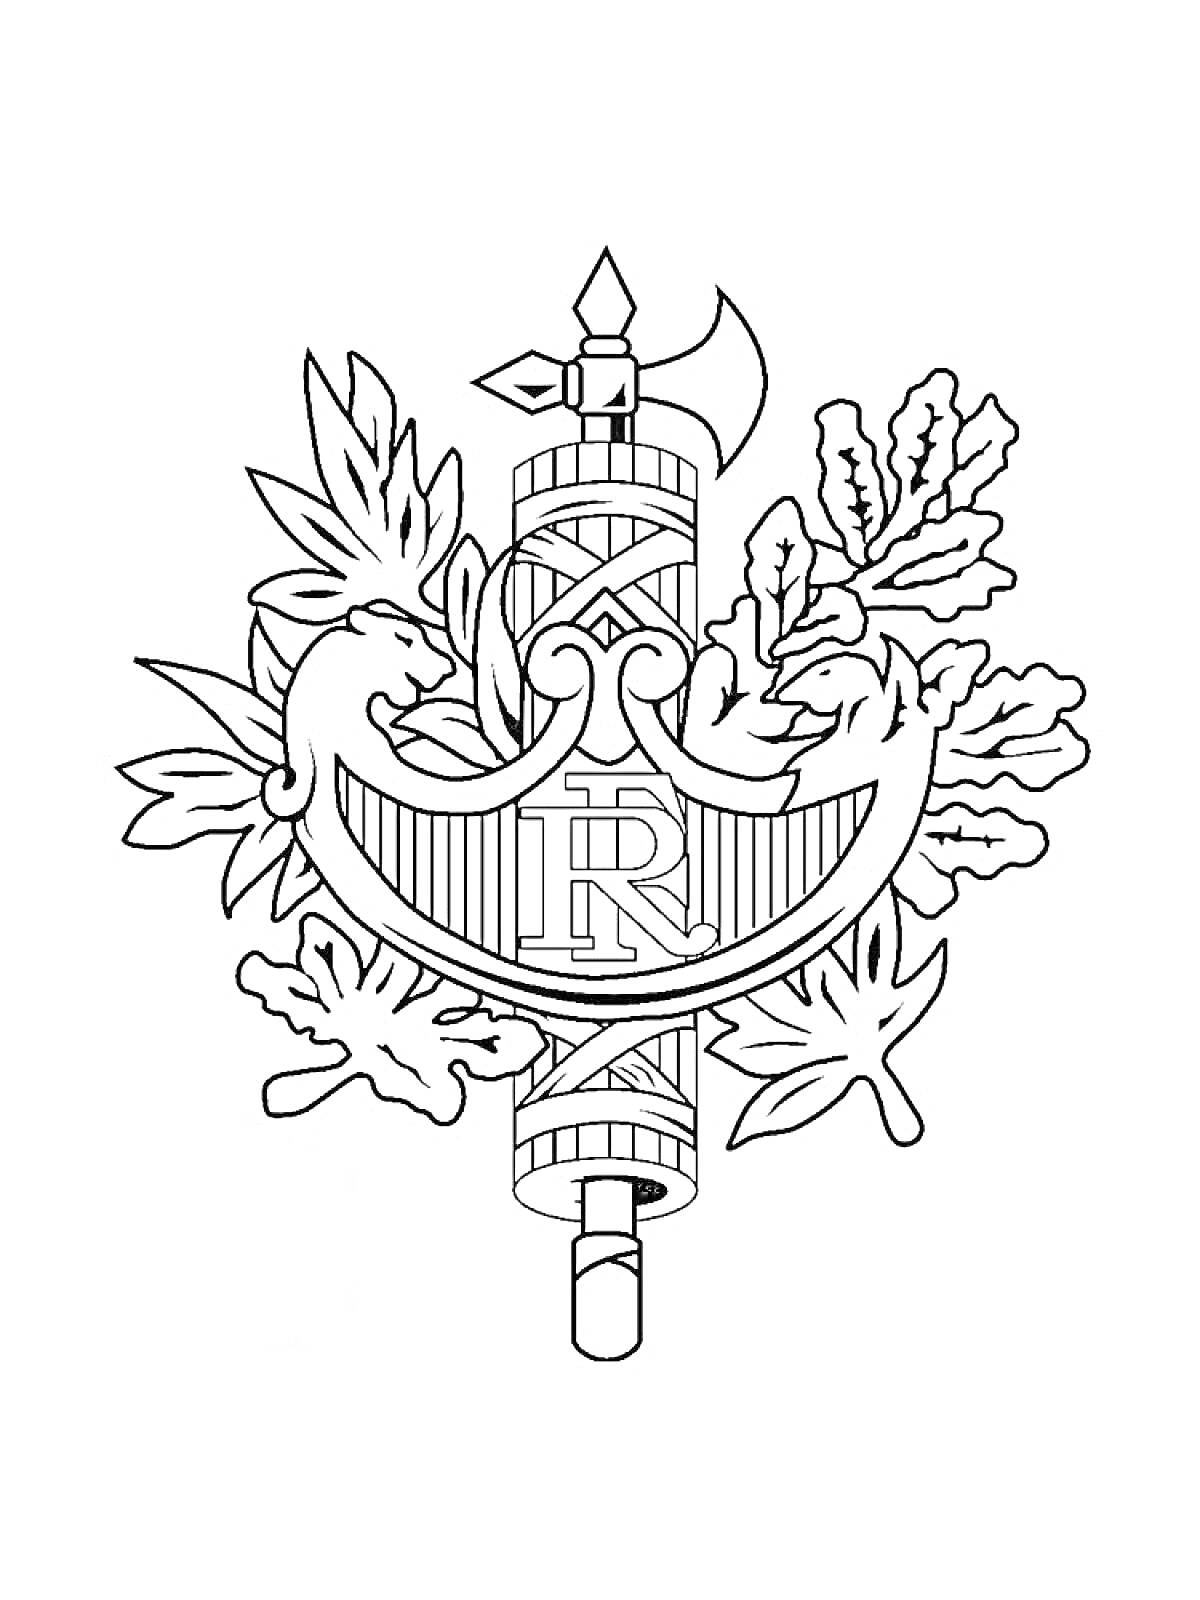 Раскраска Герб с секирой, фасциями, лавровыми и дубовыми листьями, а также буквами 